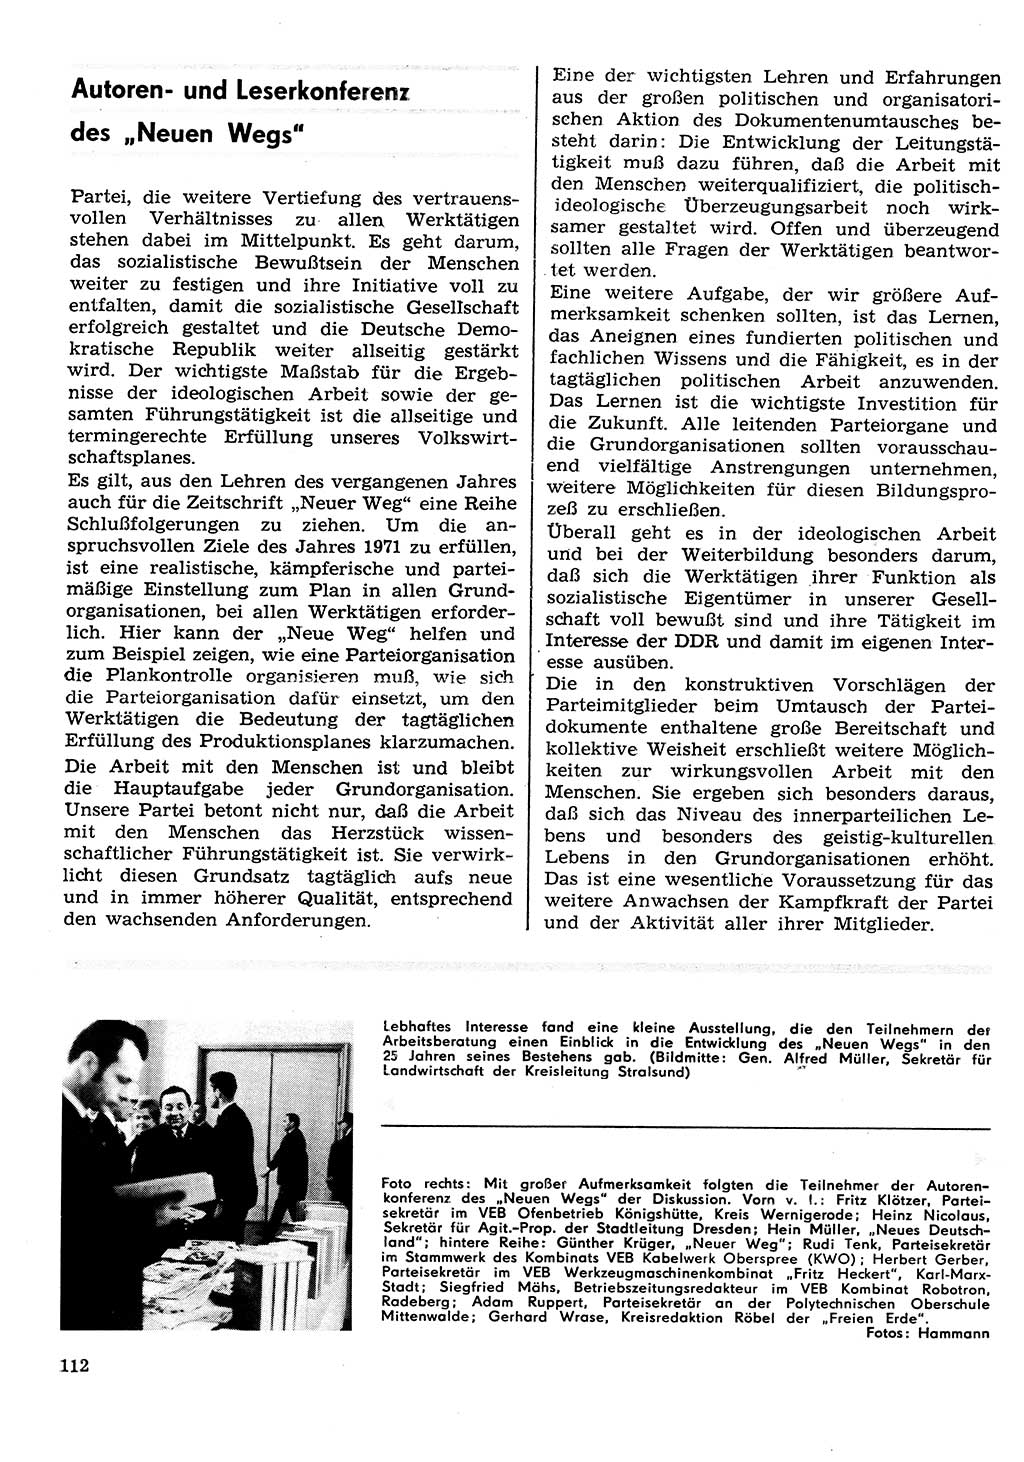 Neuer Weg (NW), Organ des Zentralkomitees (ZK) der SED (Sozialistische Einheitspartei Deutschlands) für Fragen des Parteilebens, 26. Jahrgang [Deutsche Demokratische Republik (DDR)] 1971, Seite 112 (NW ZK SED DDR 1971, S. 112)